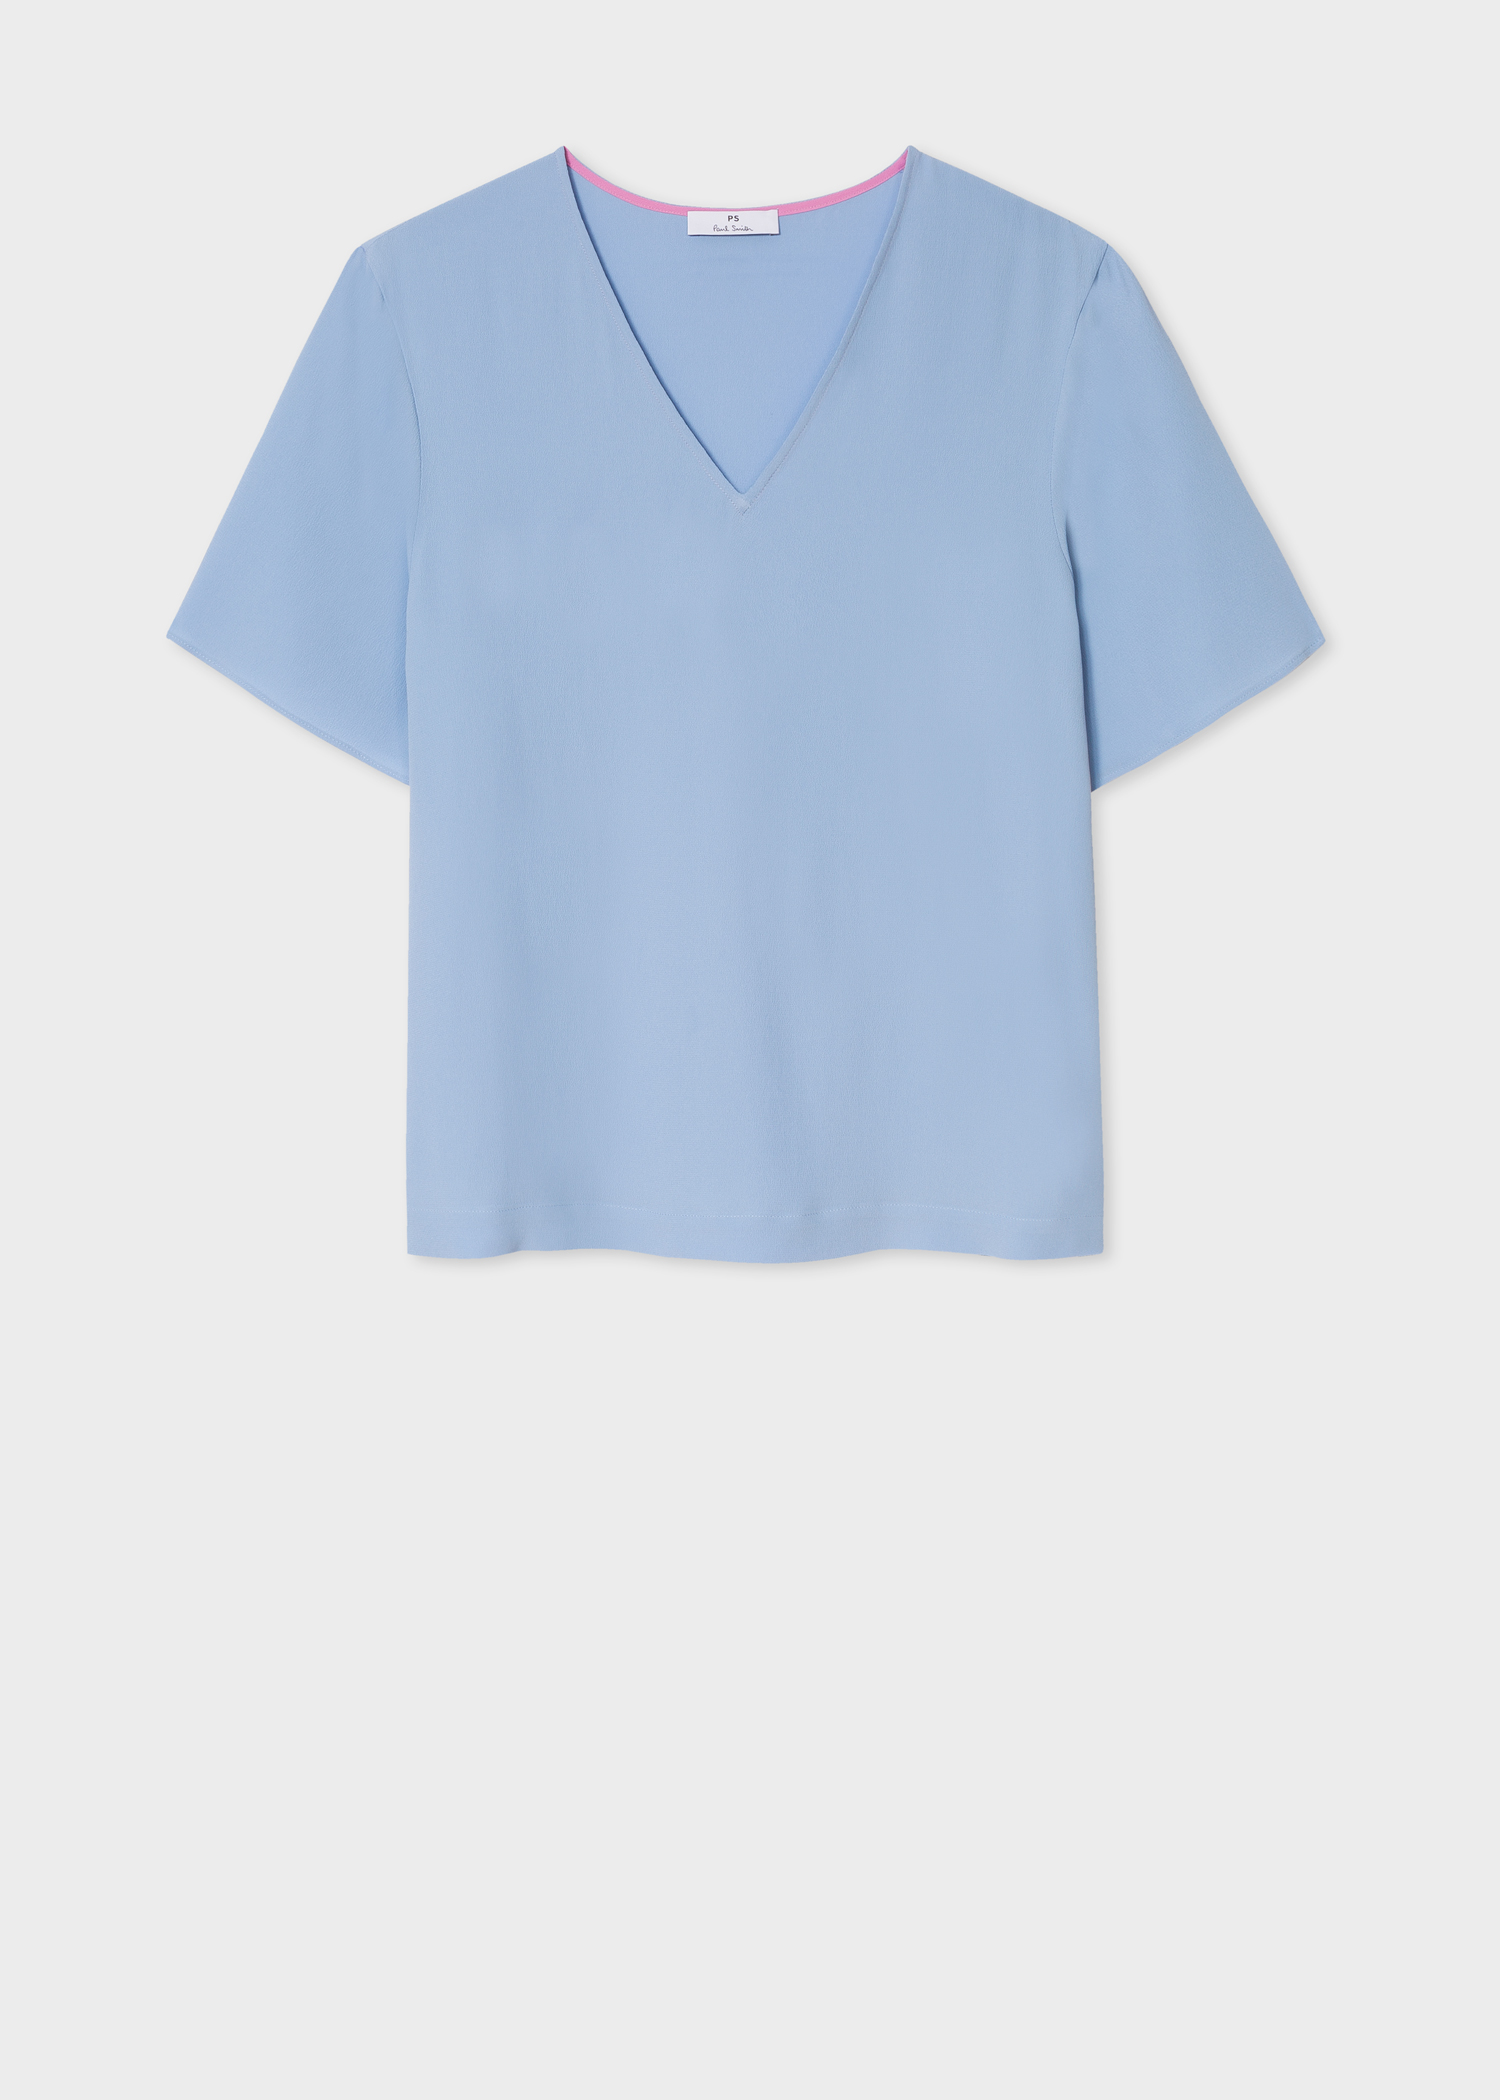 Front View - Women's Light Blue V-Neck Silk-Blend T-Shirt Paul Smith